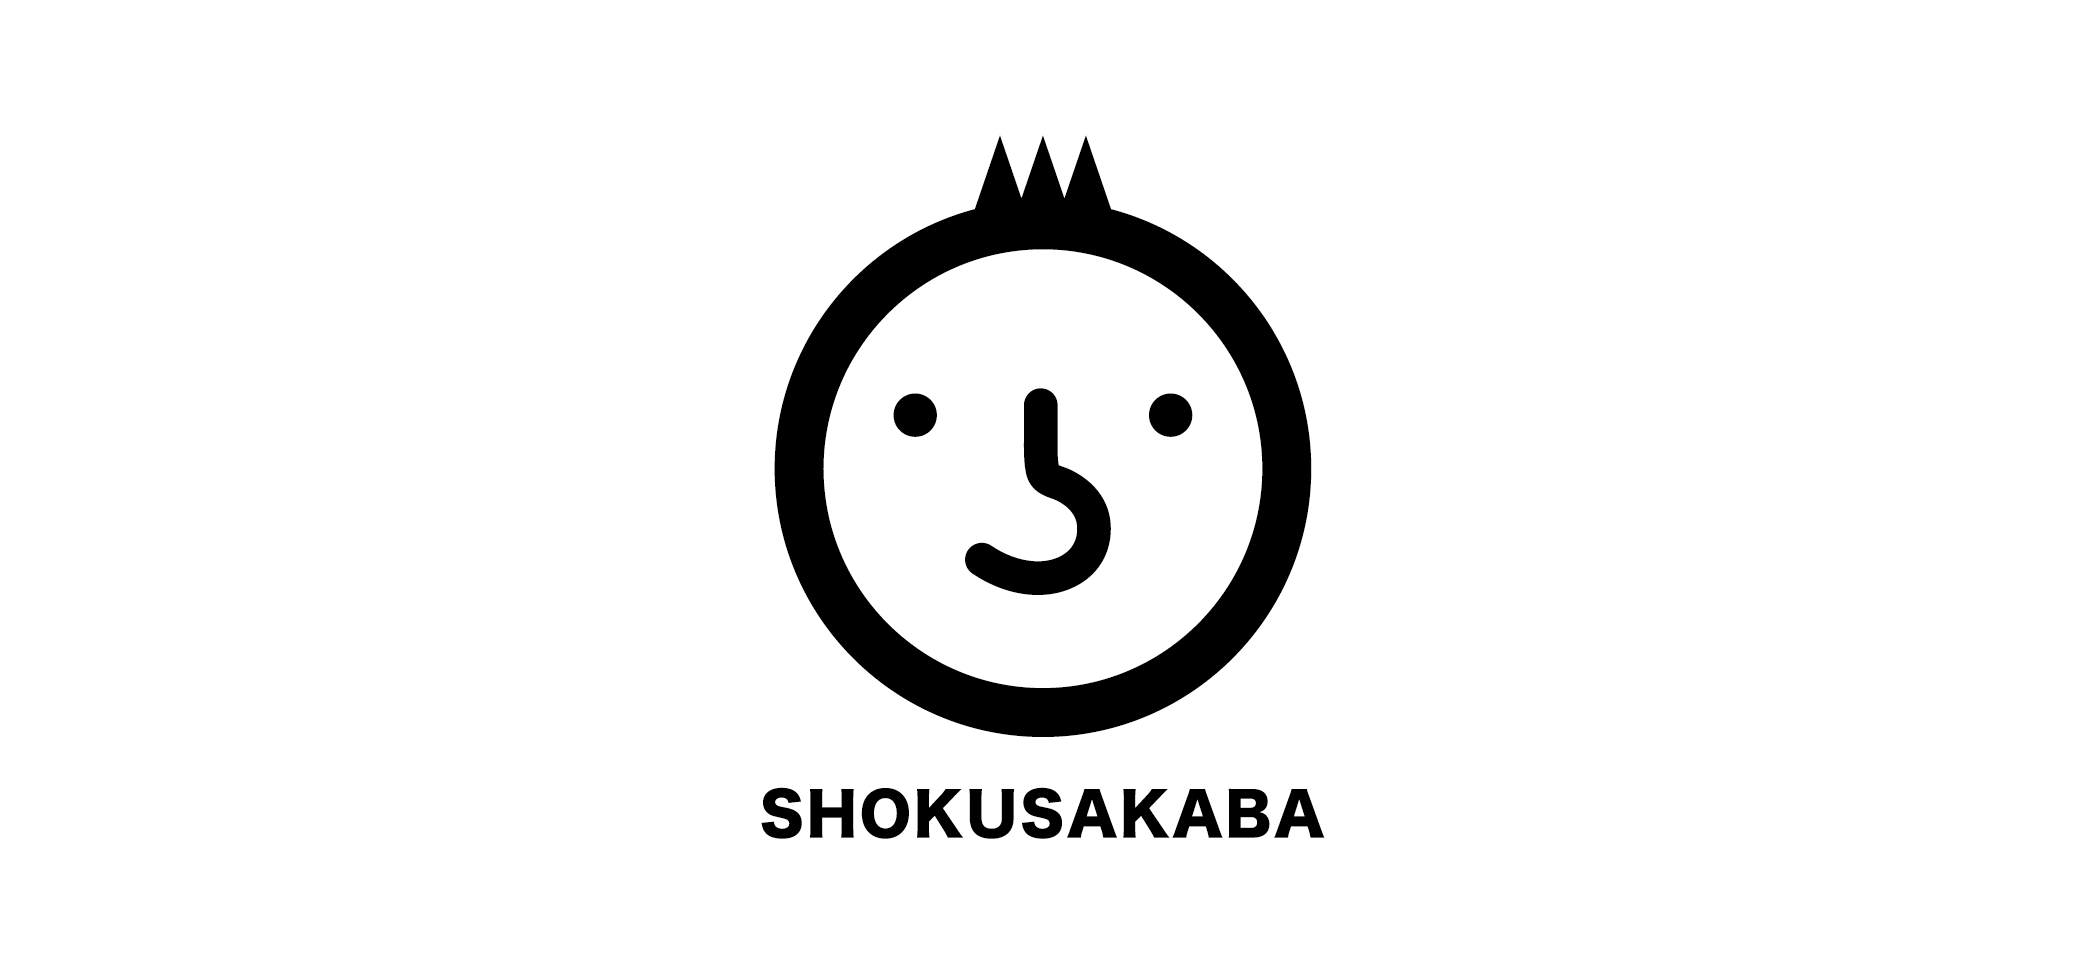 Shokusakaba